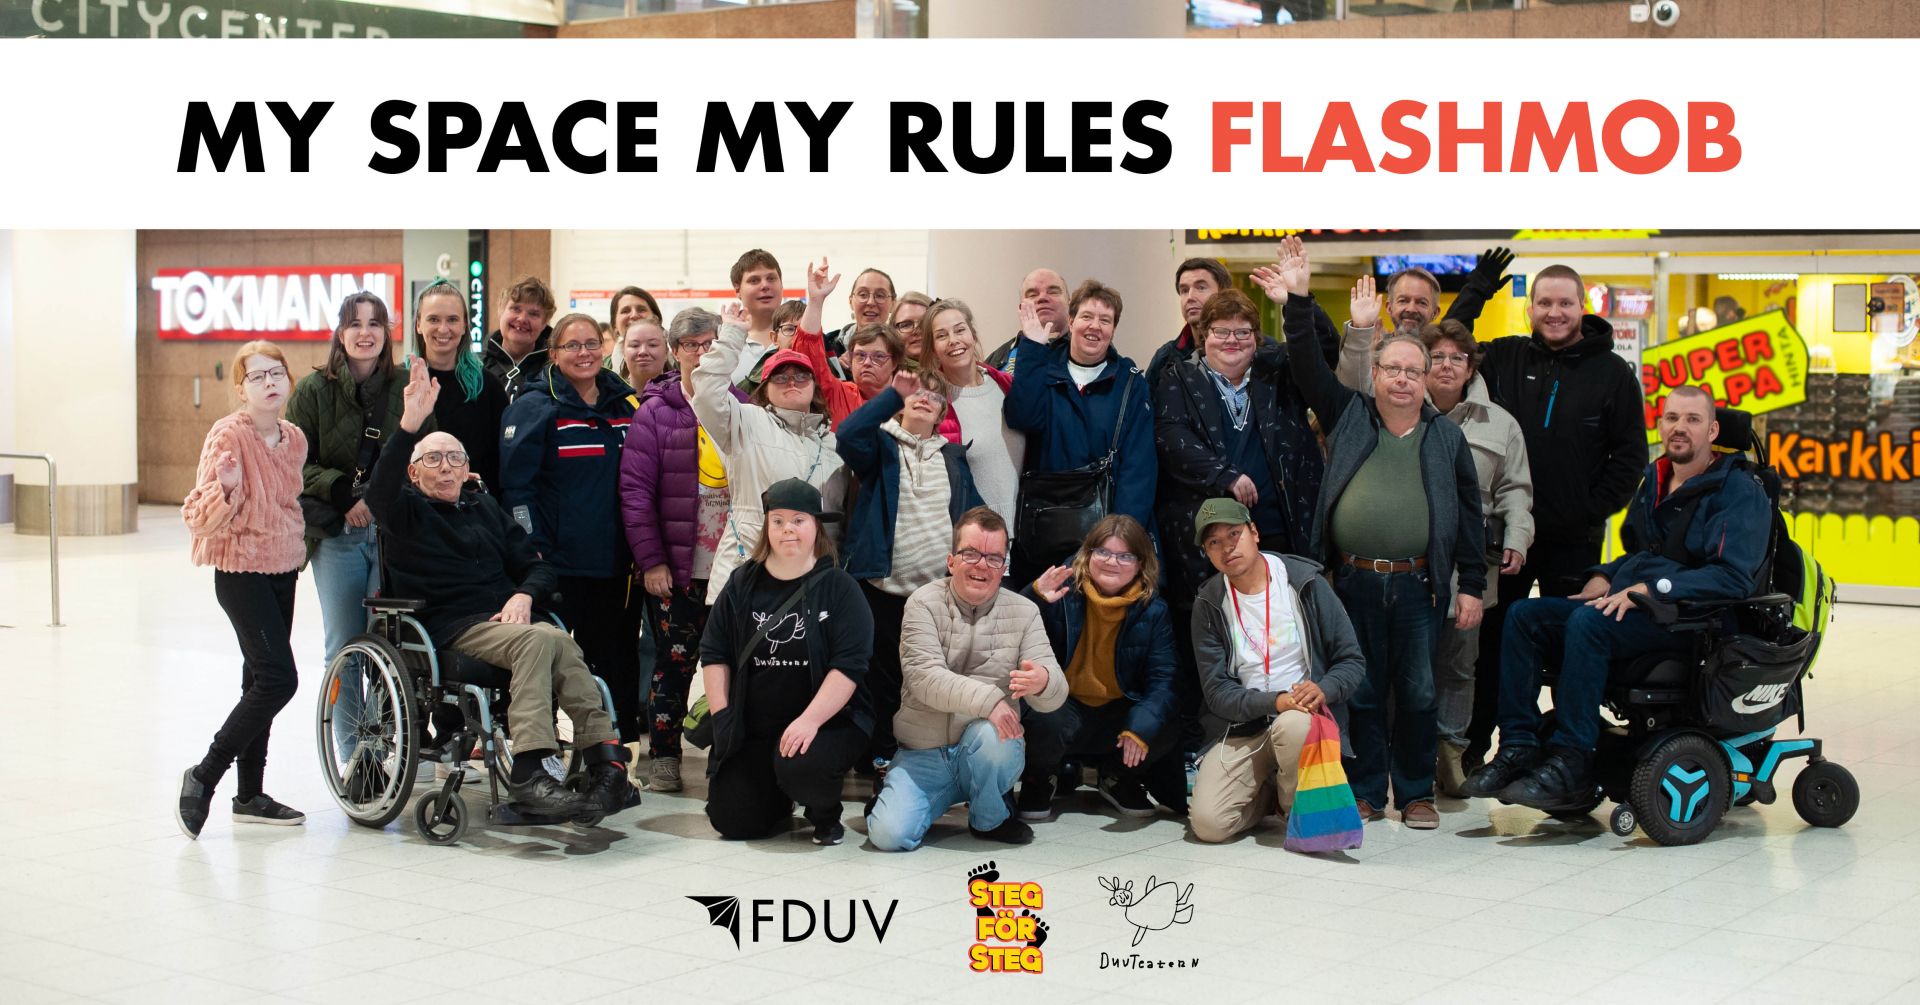 En stor grupp människor i metrostationsmiljö och texten My space my rules flashmob samt Steg för Stegs, DuvTeaterns och FDUV:s logon.